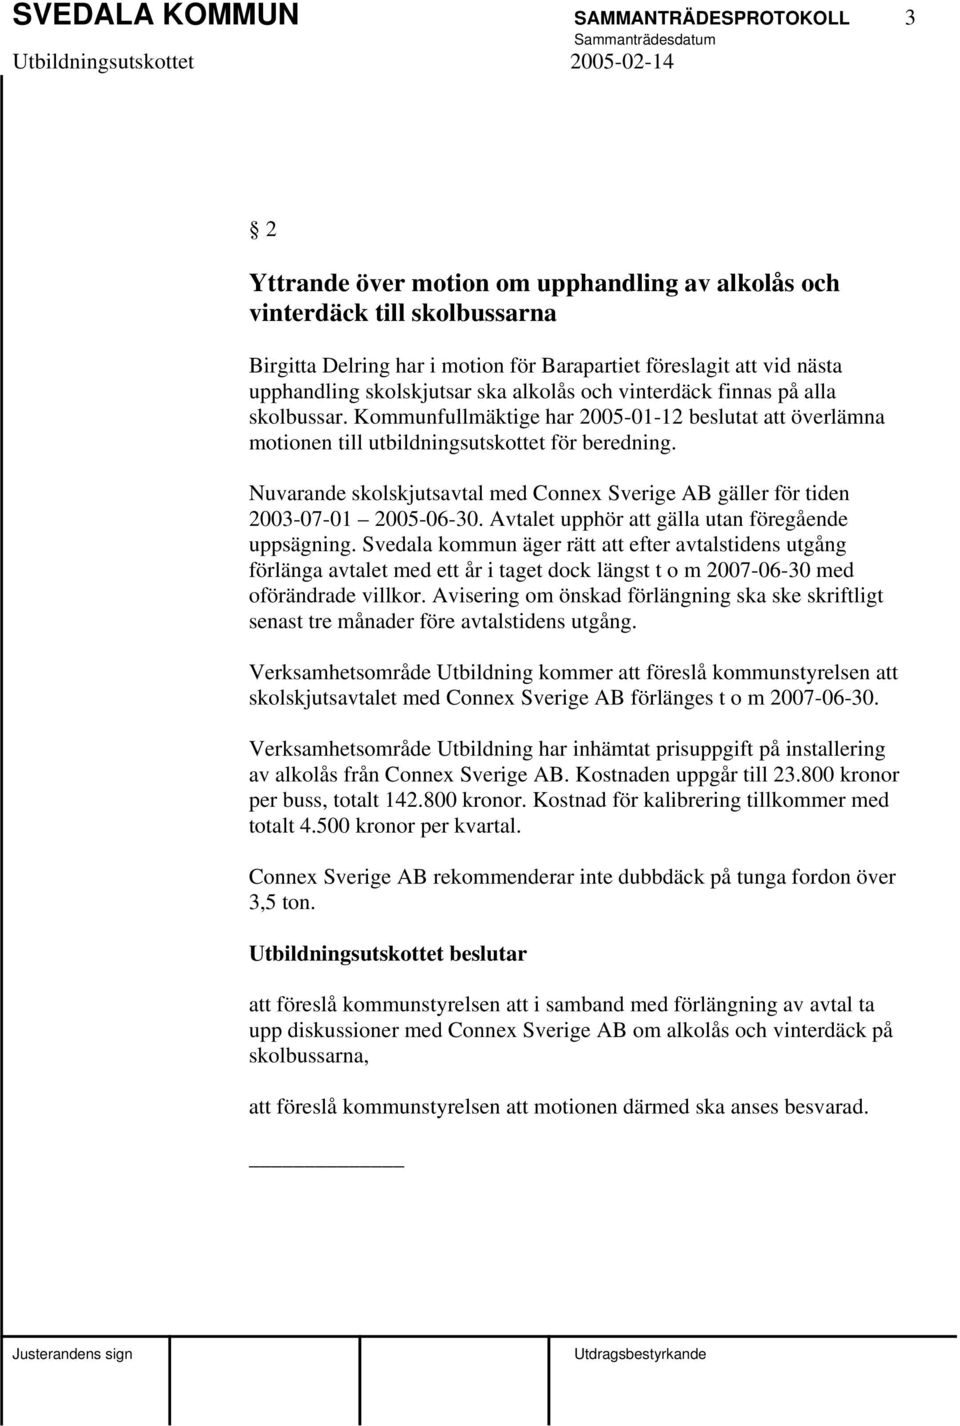 Nuvarande skolskjutsavtal med Connex Sverige AB gäller för tiden 2003-07-01 2005-06-30. Avtalet upphör att gälla utan föregående uppsägning.